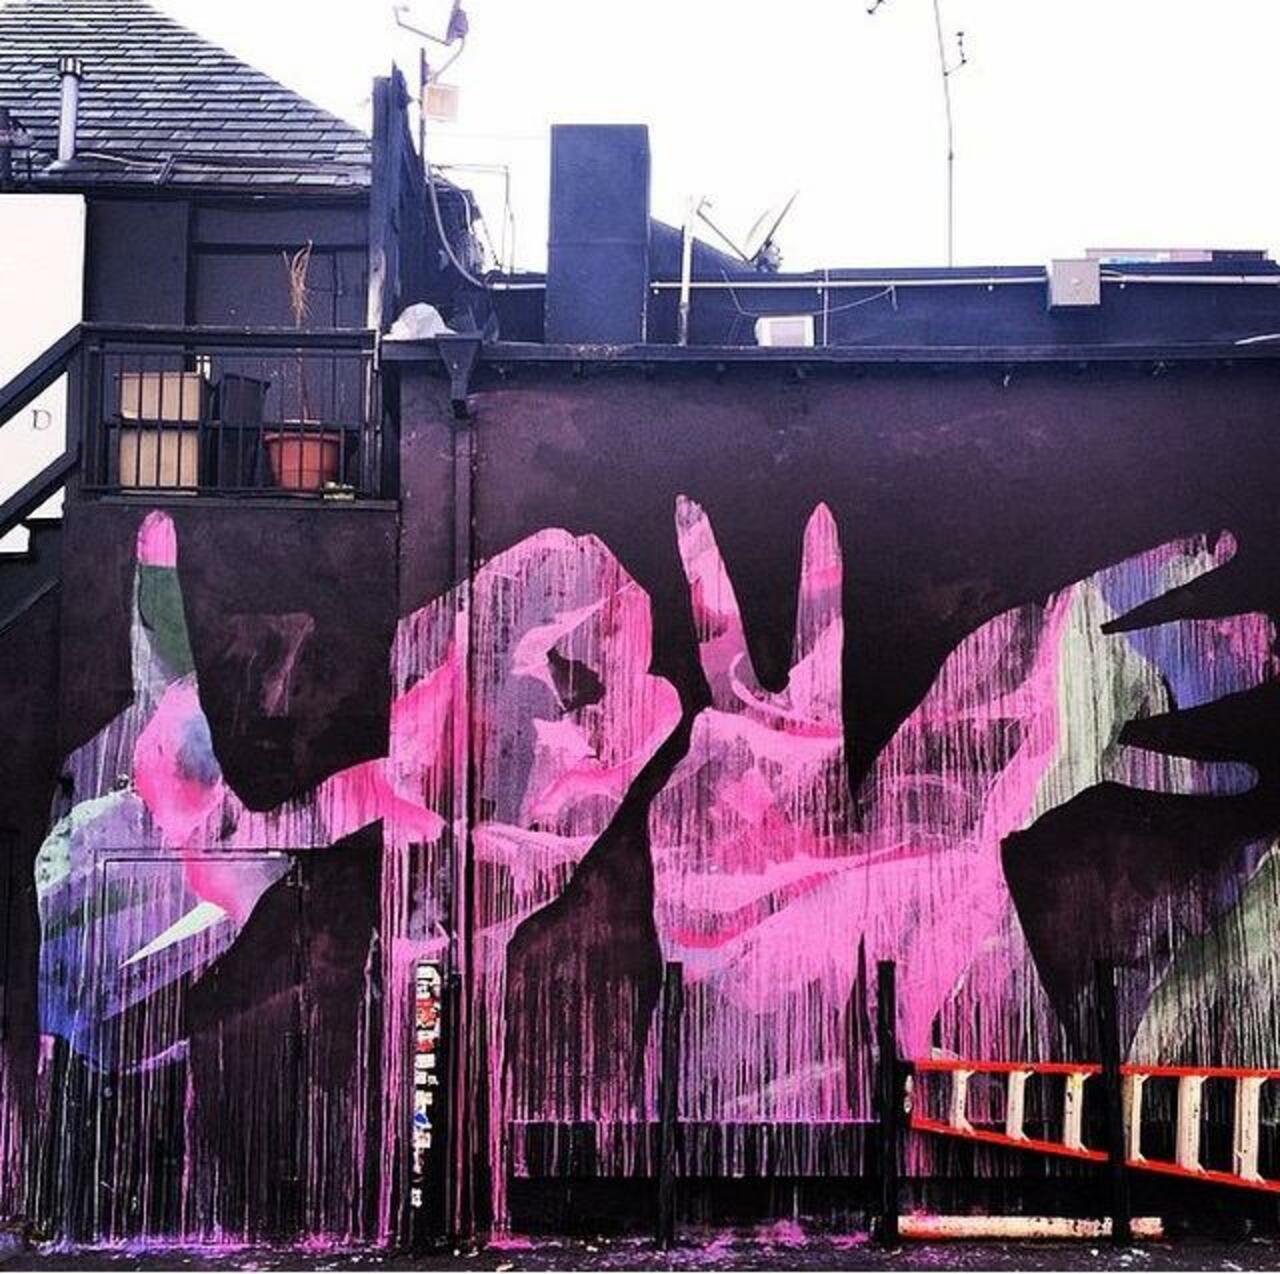 'Love' 
Street Art by Michael Owen ❤️

#art #arte #graffiti #streetart http://t.co/maO16y9UQ4